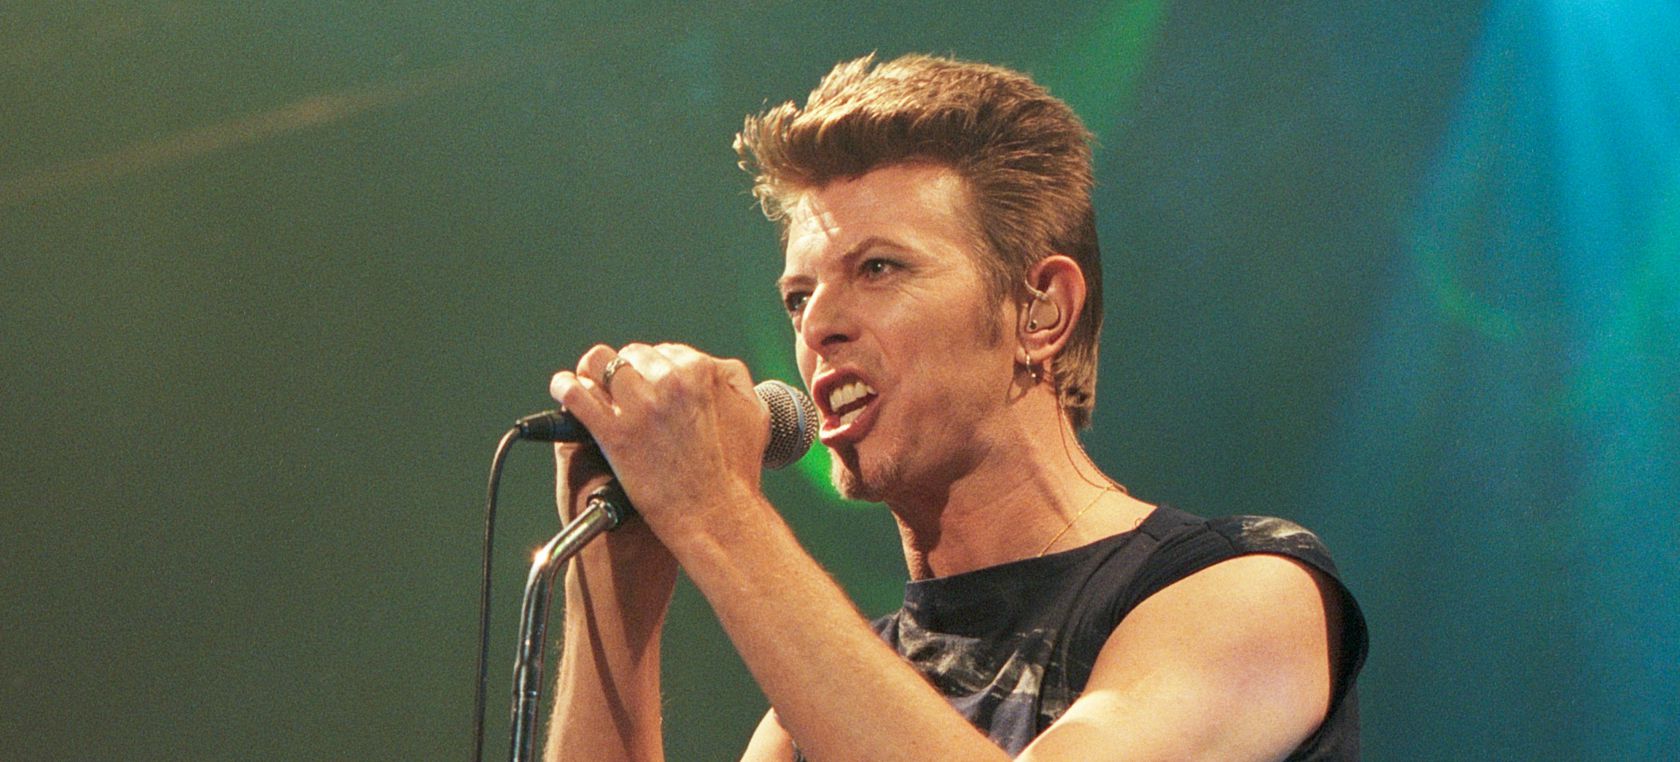 Las frases más inspiradoras de David Bowie y George Michael